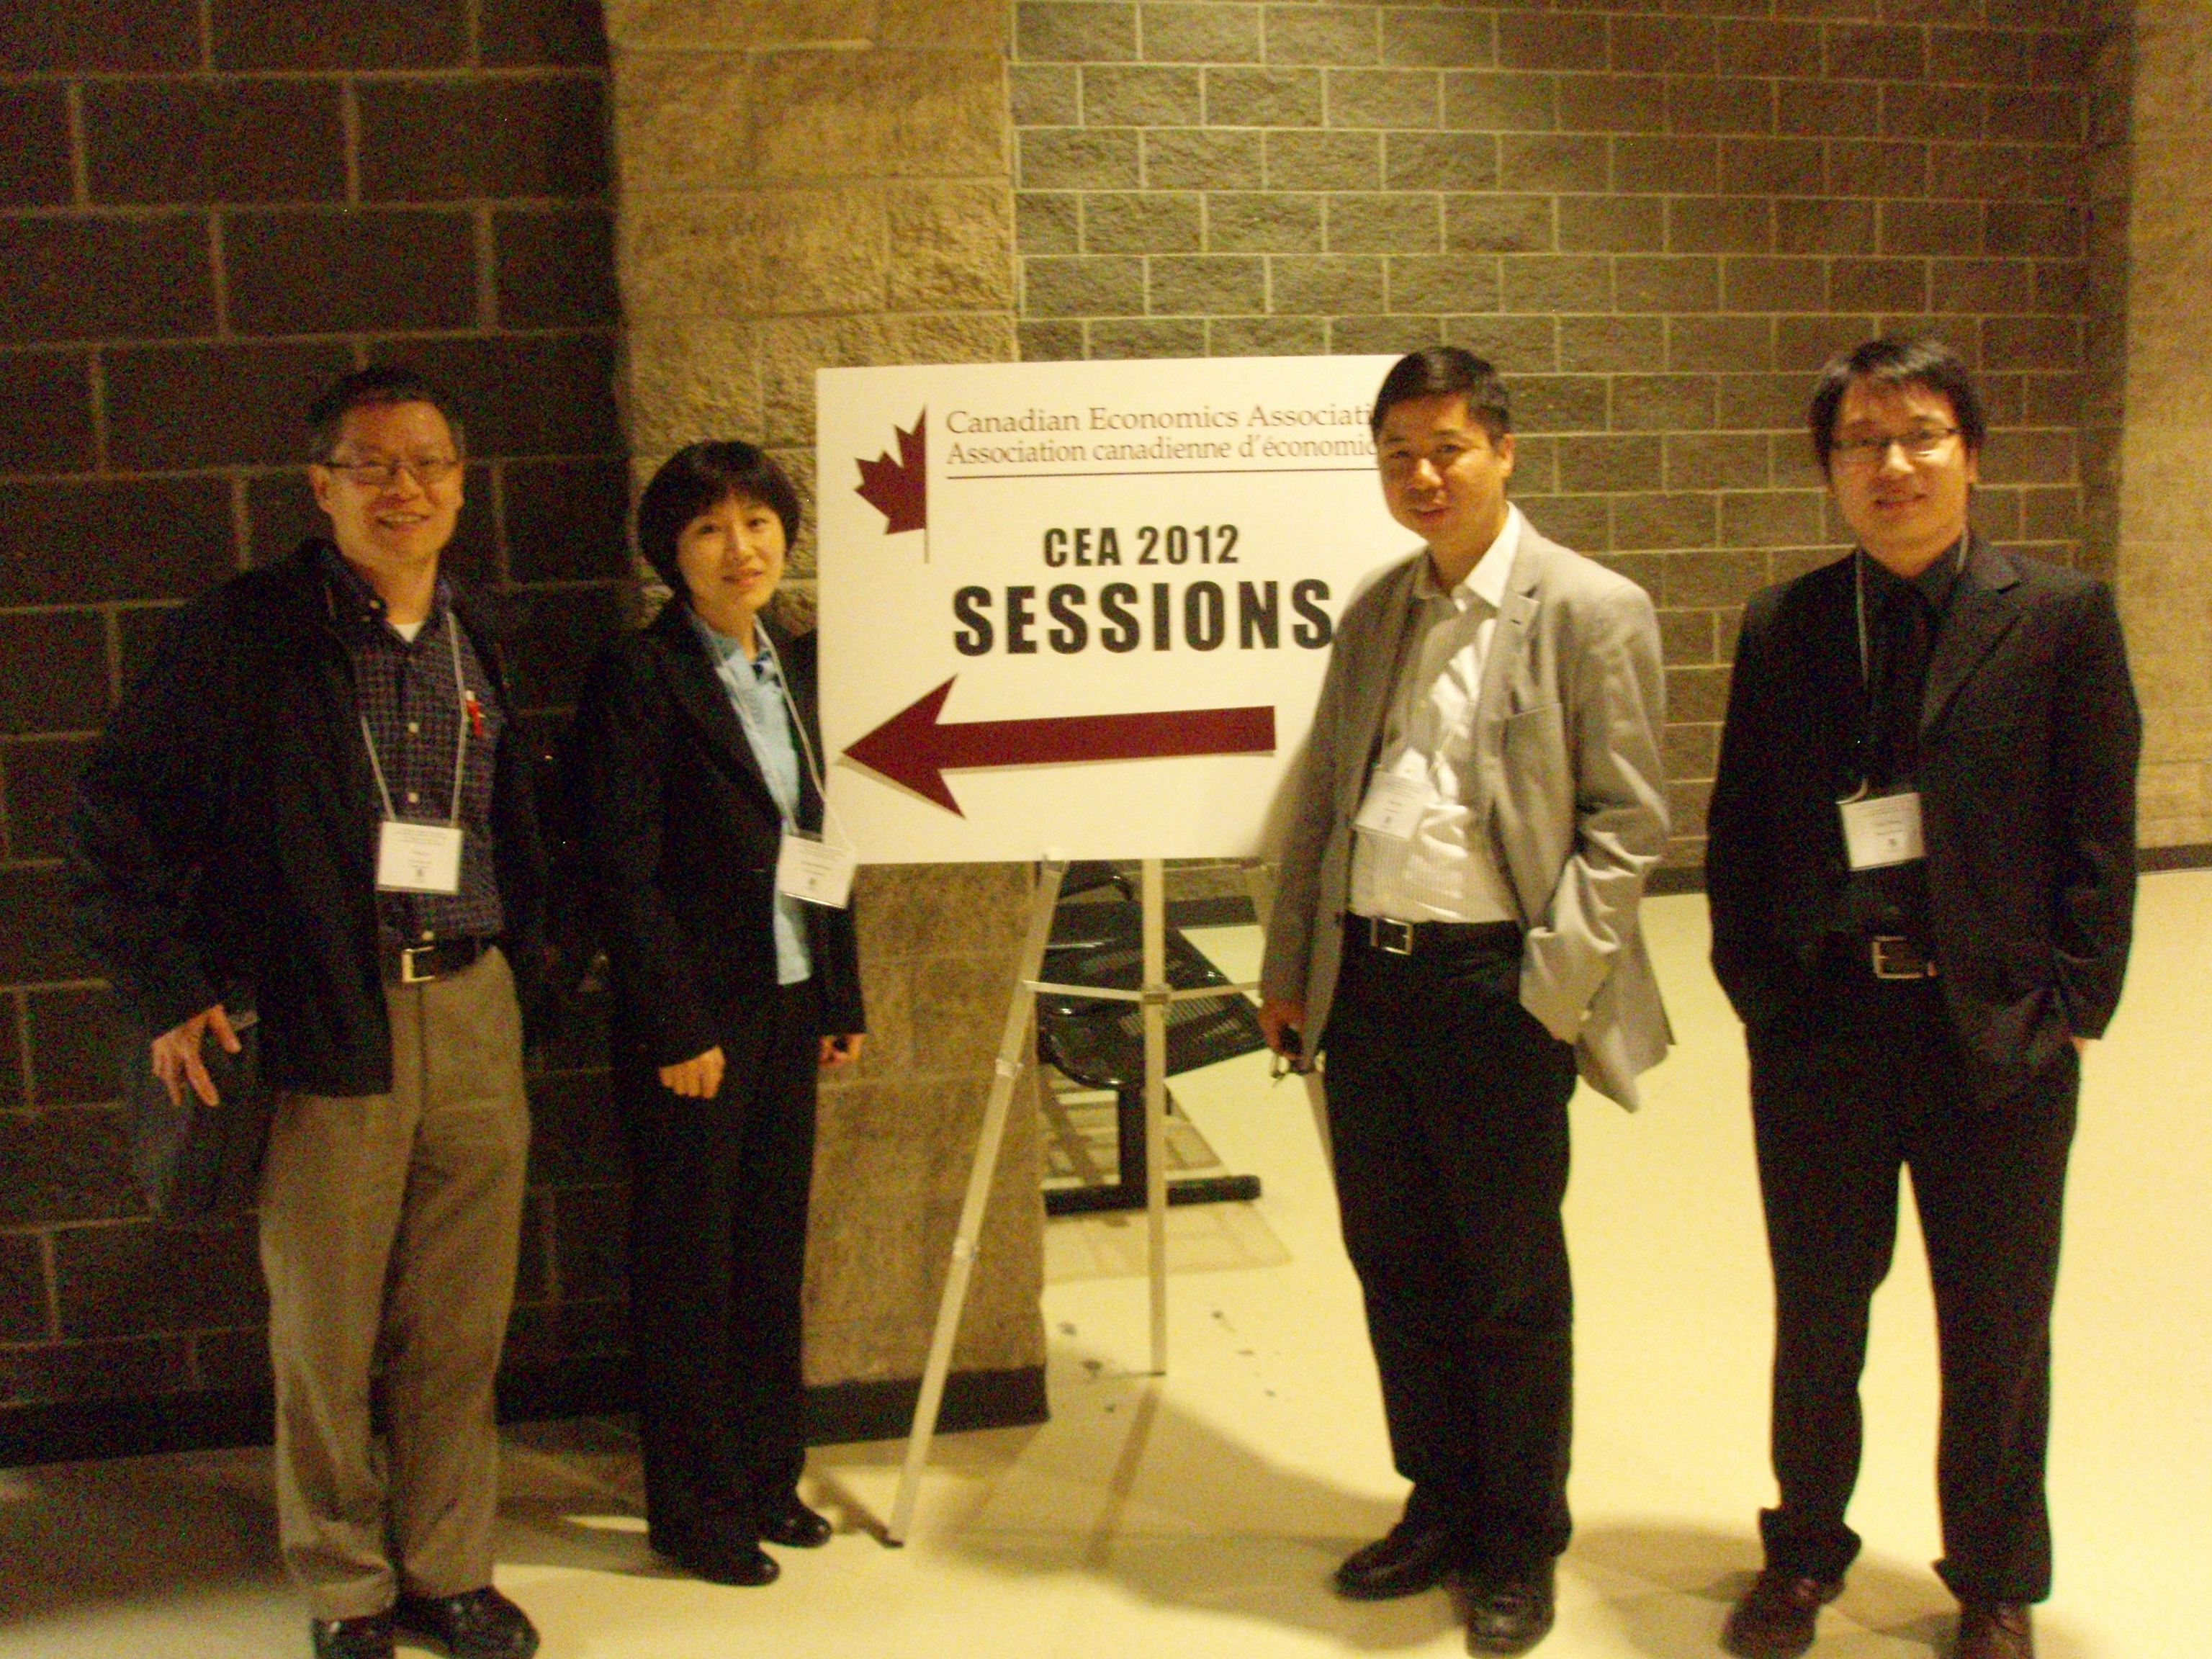 Panelists (from left): Ding Lu, Qingyan Shang, Tony Fang, Jian Zhang